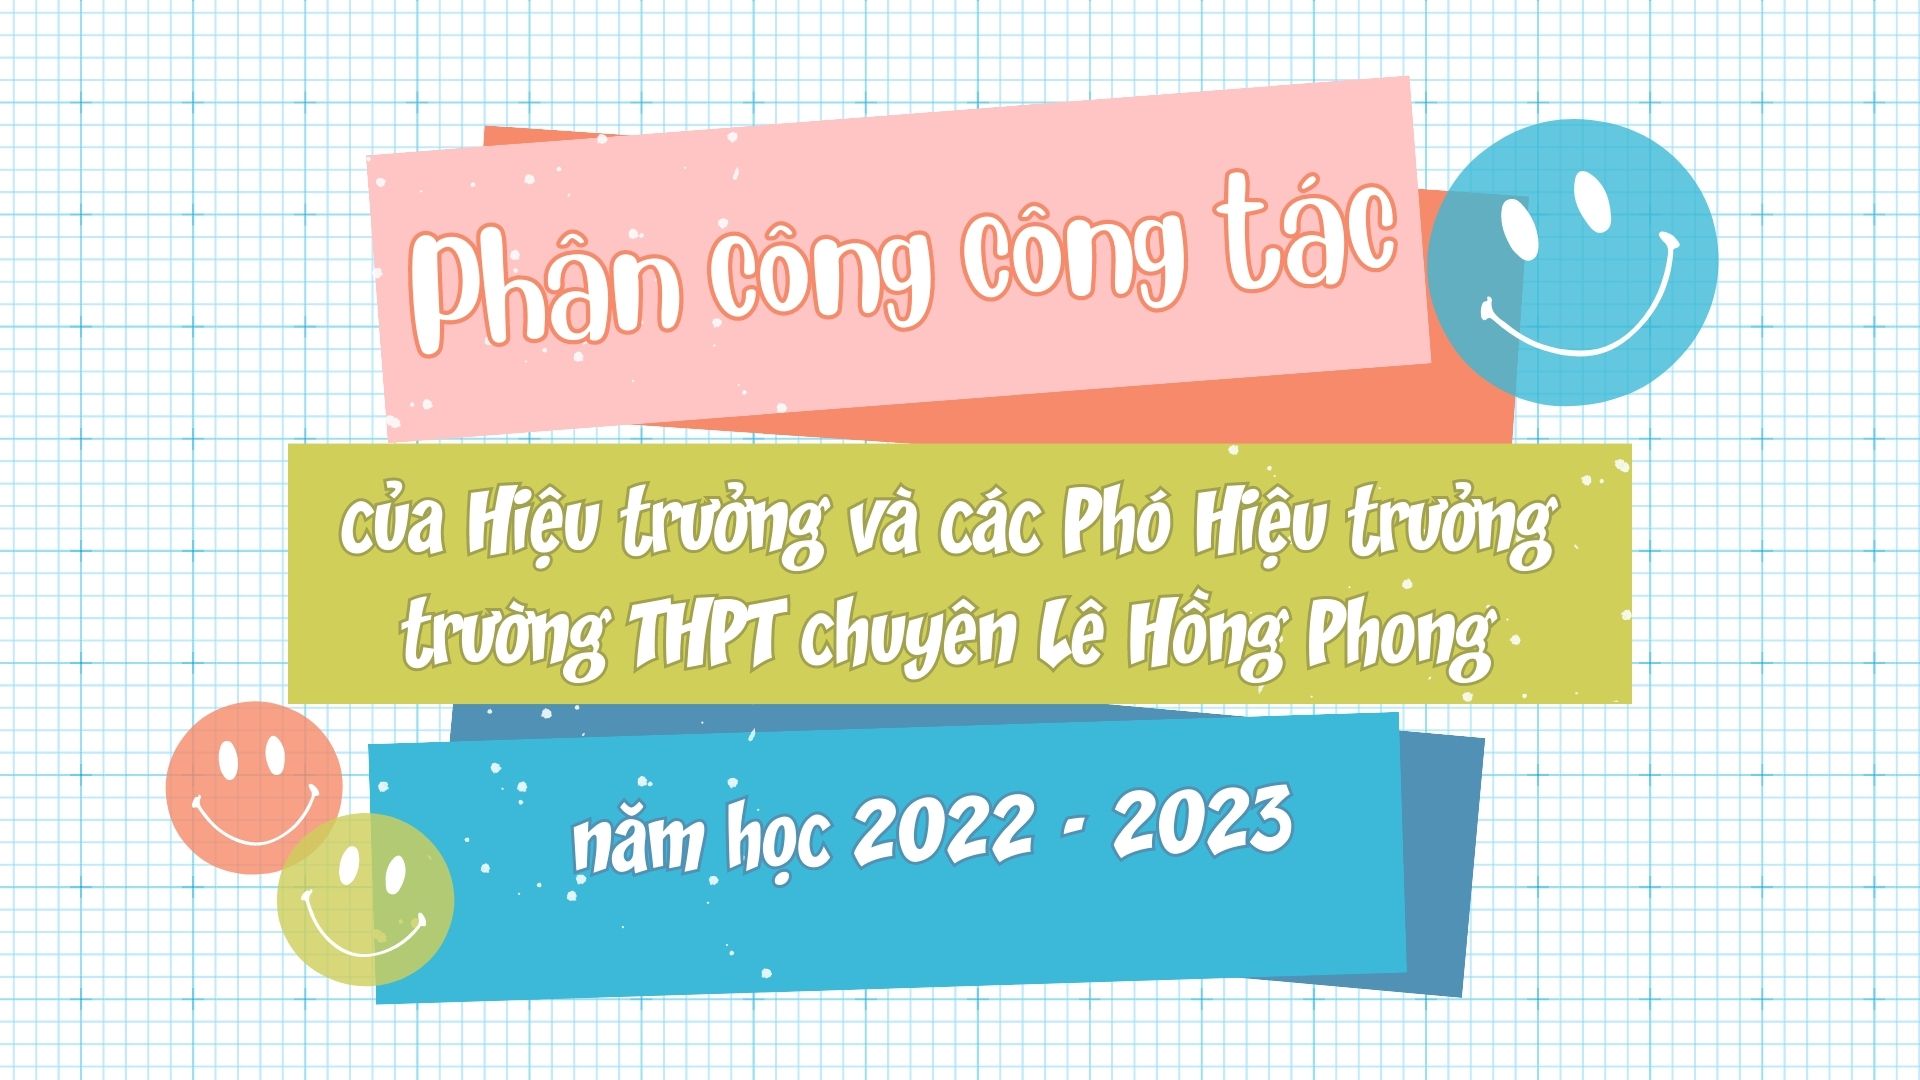 Phân công công tác của Hiệu trưởng và các Phó Hiệu trưởng trường THPT chuyên Lê Hồng Phong năm học 2021-2022